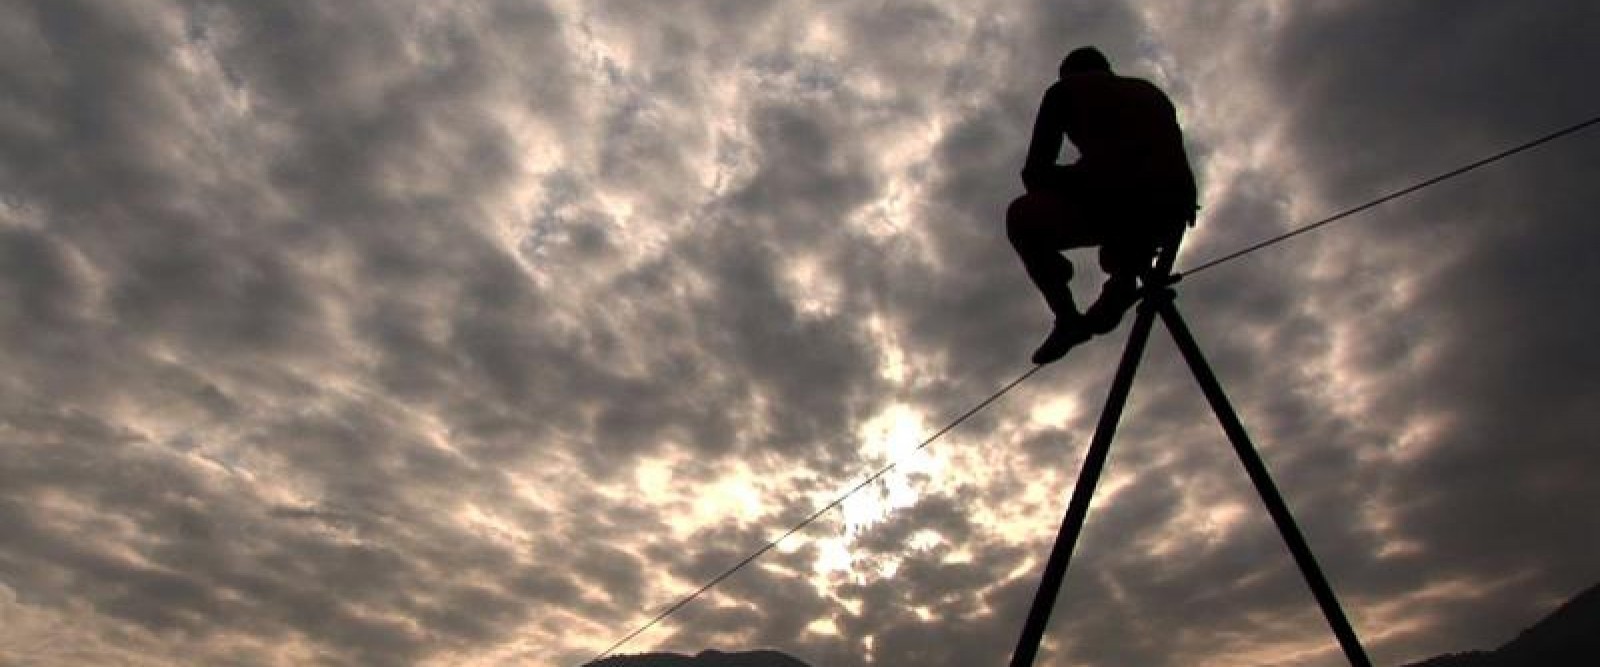 the-last-tightrope-dancer-in-armenia-1-1600x667.jpg